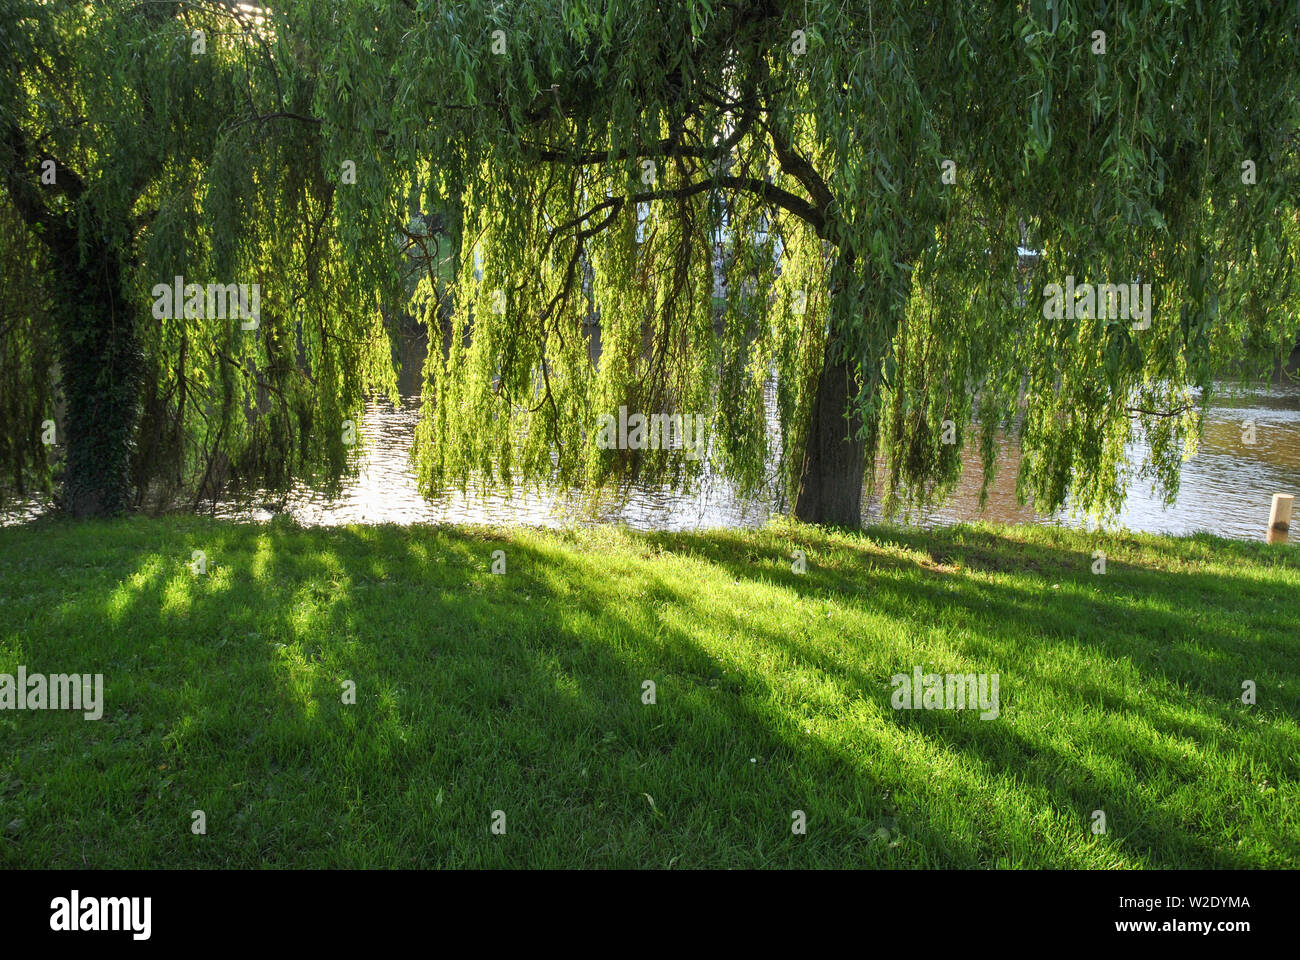 Soir du soleil brillant à travers arbres casting shadows on the grass Banque D'Images